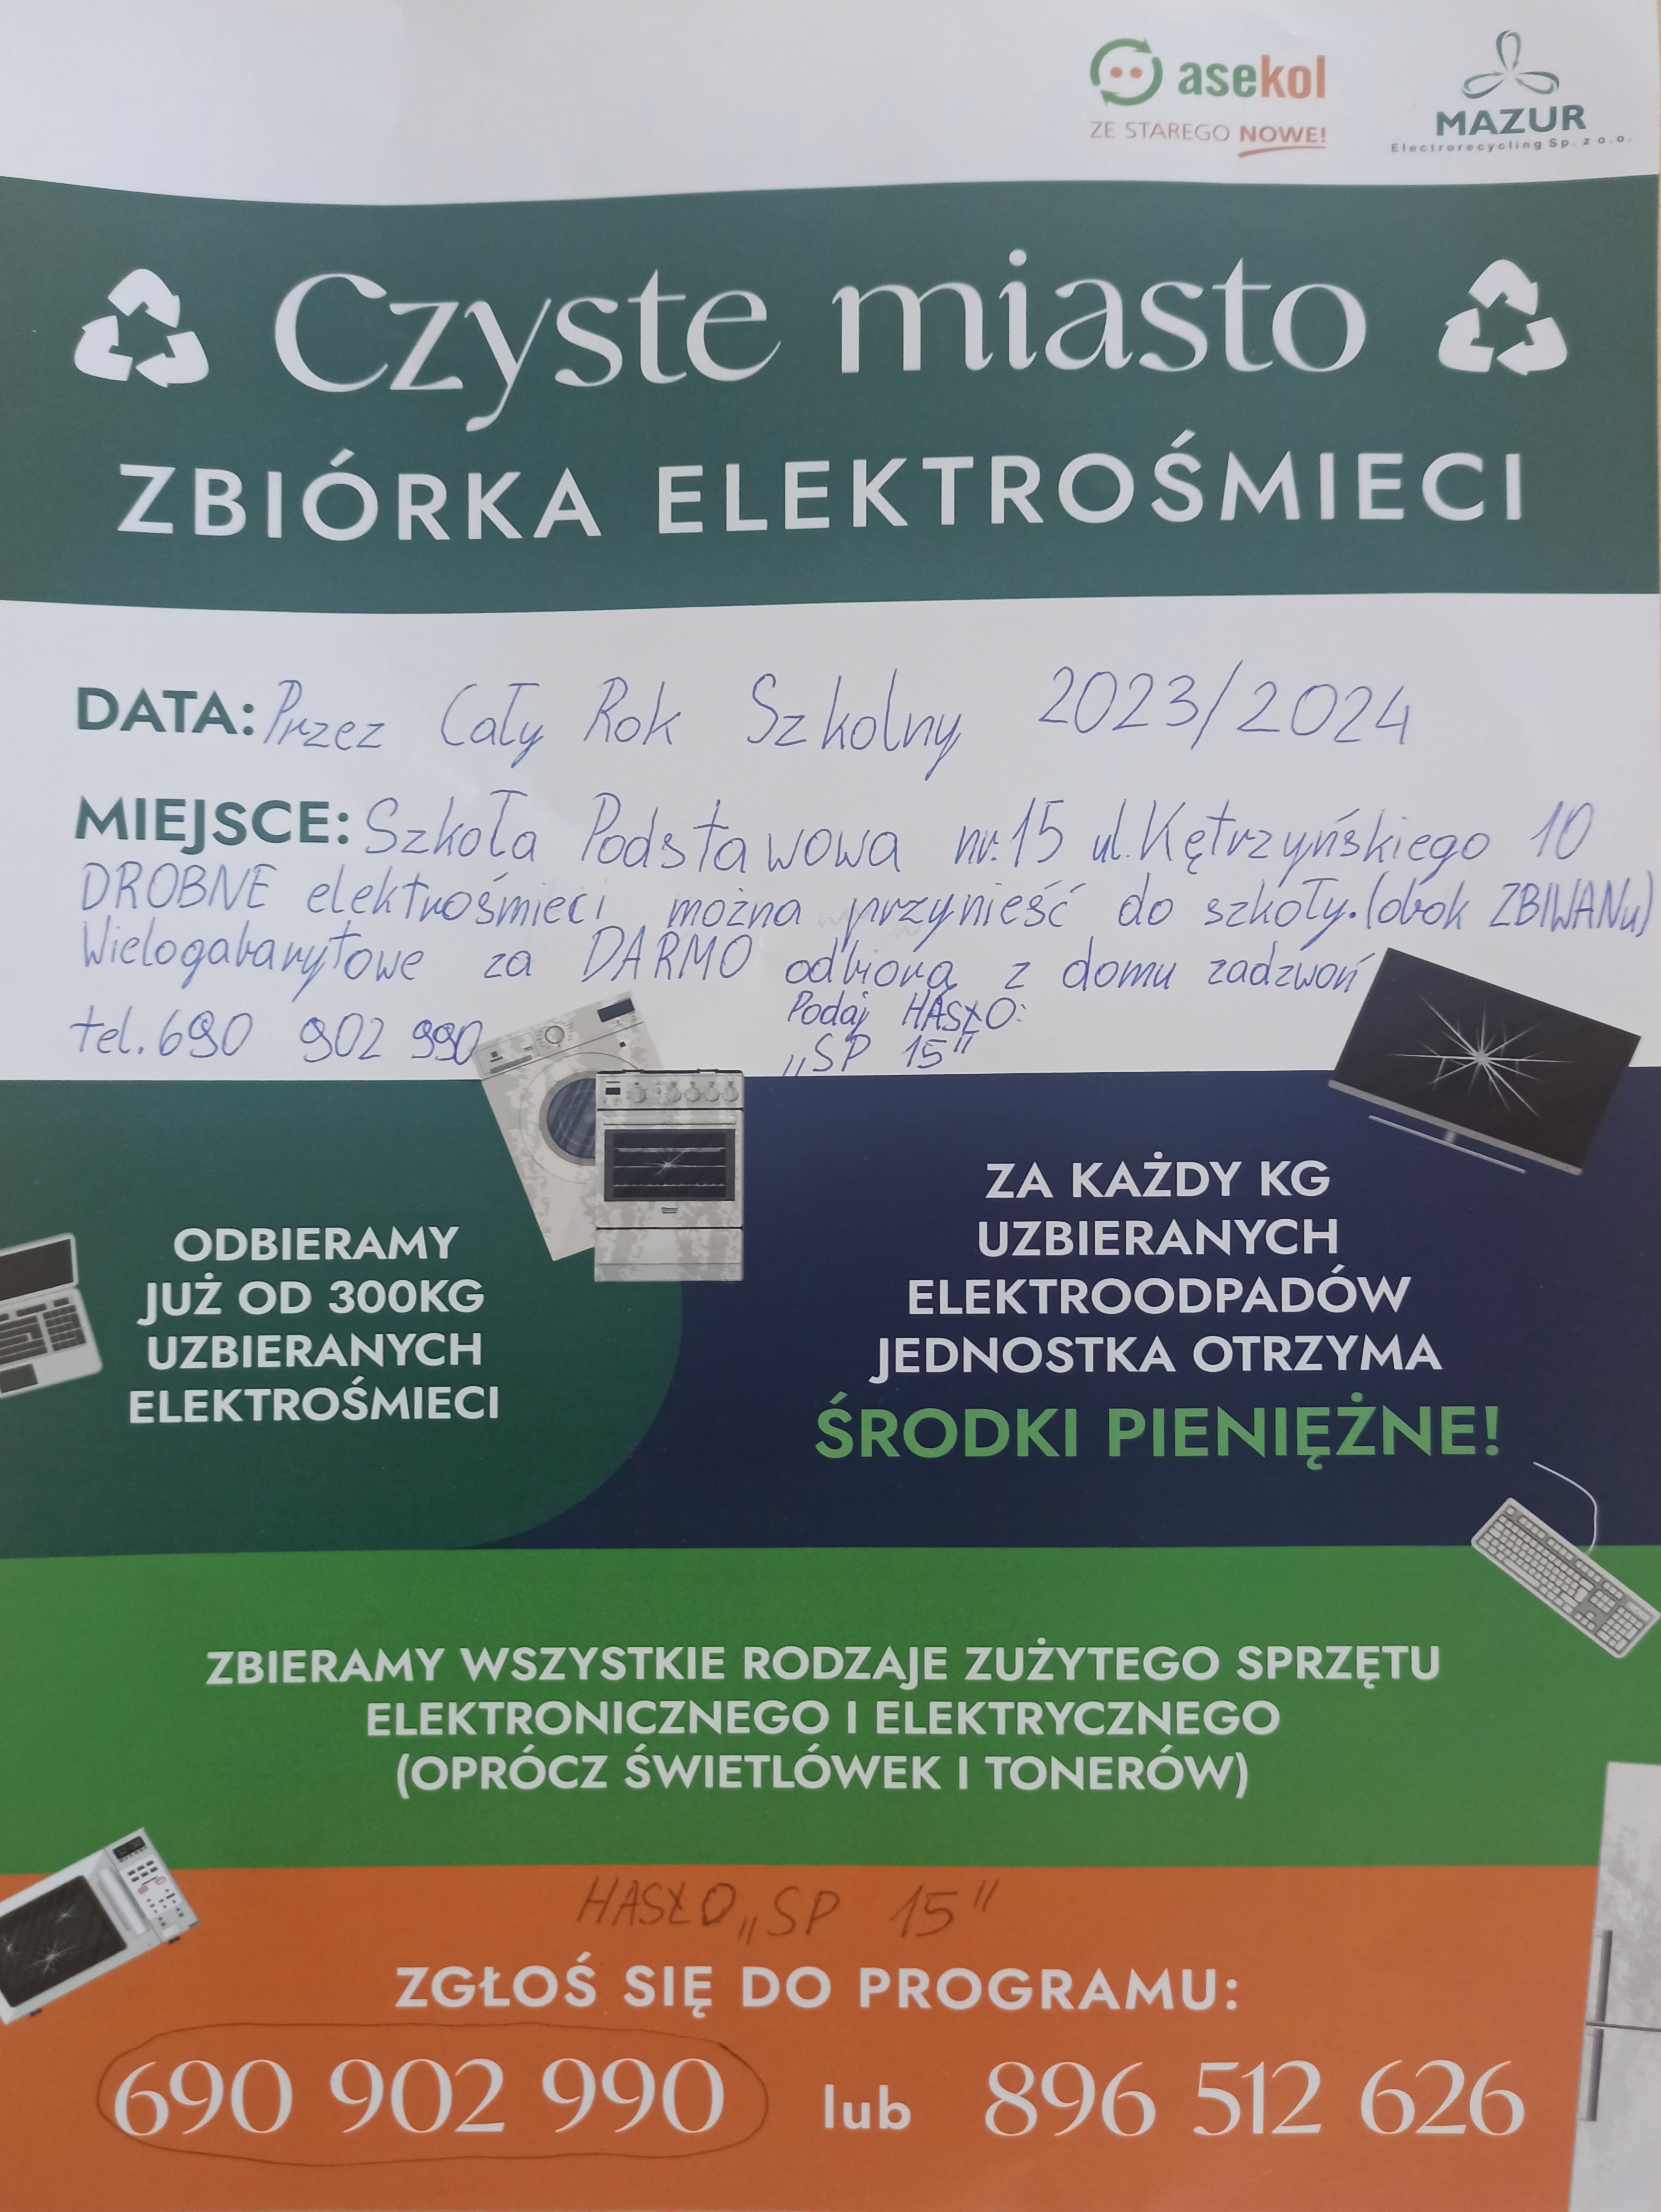 Plakat reklamujący zbiórkę elektrośmieci